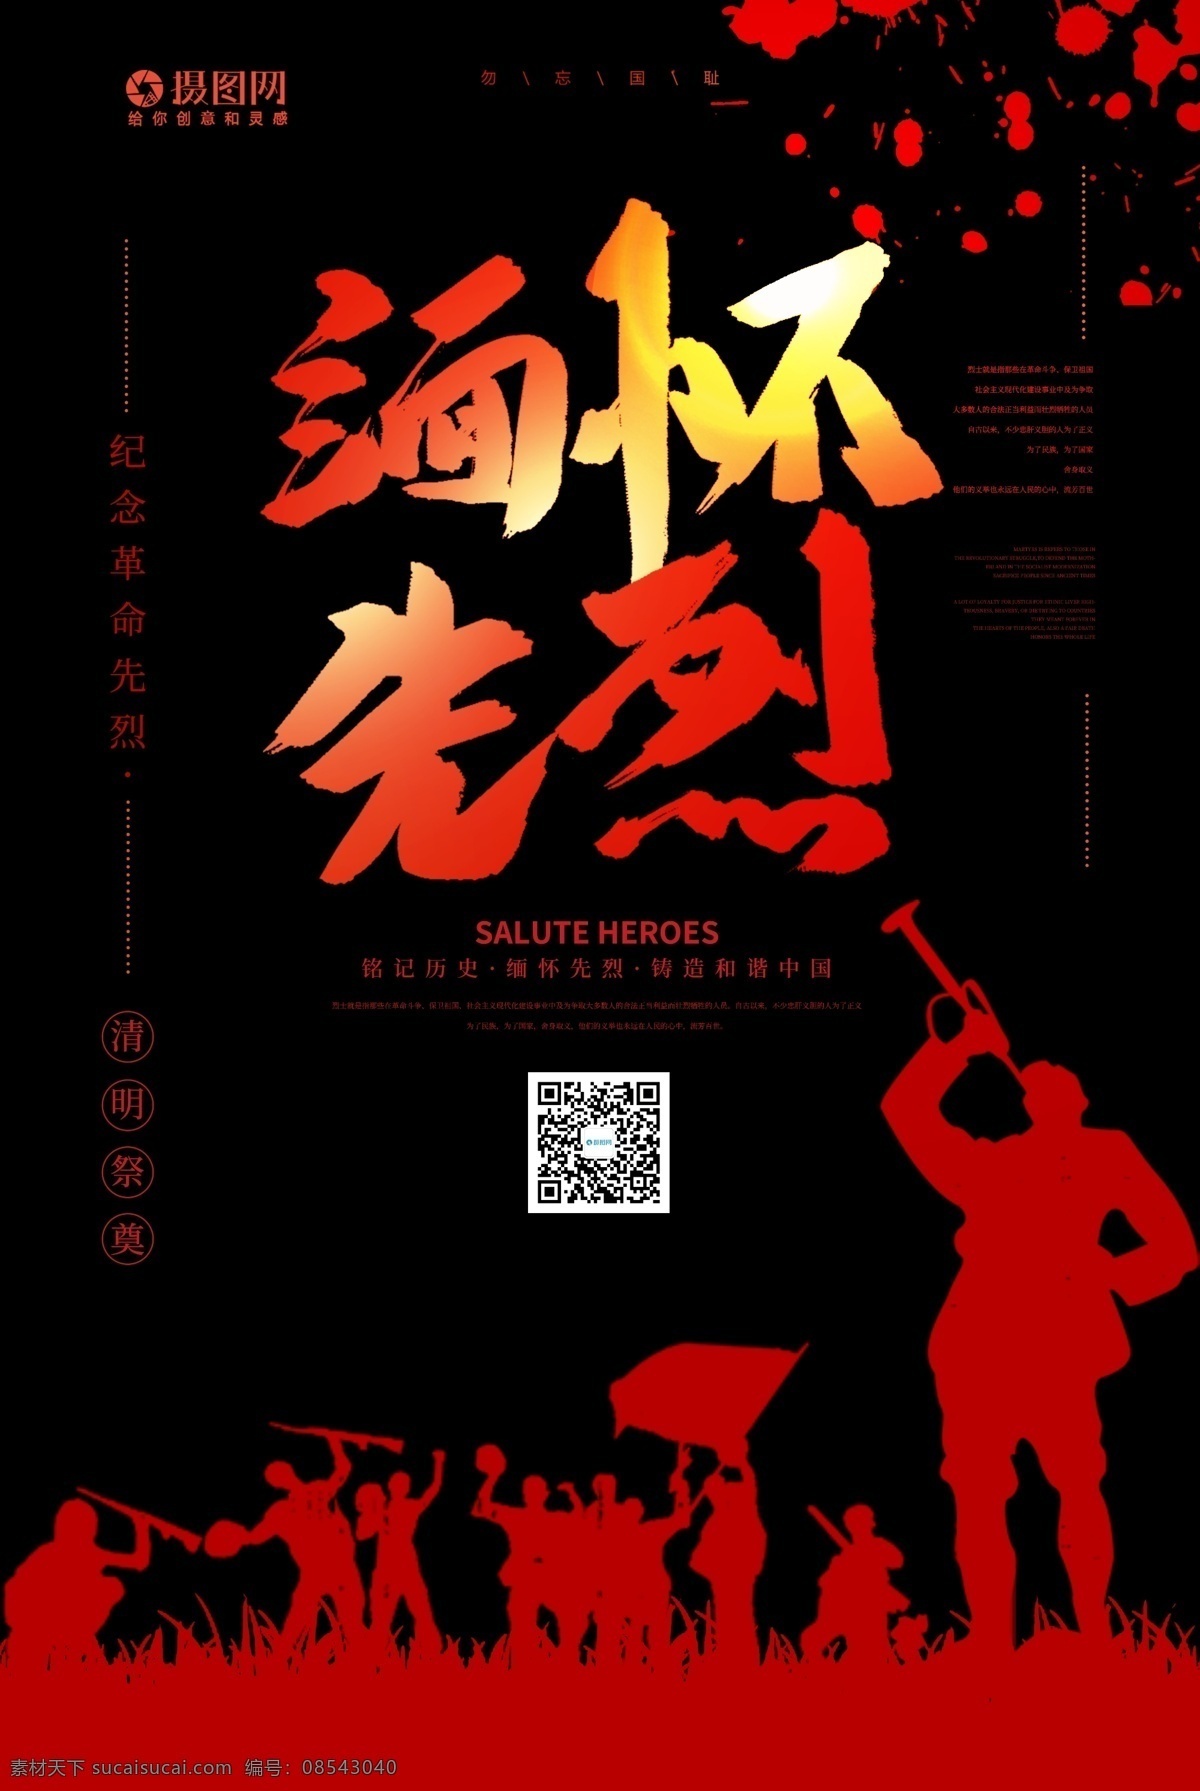 清明节 纪念 烈士 缅怀 先烈 海报 中国 传统 清明 祭奠 出游 传统节日 下雨 烟雨 战士